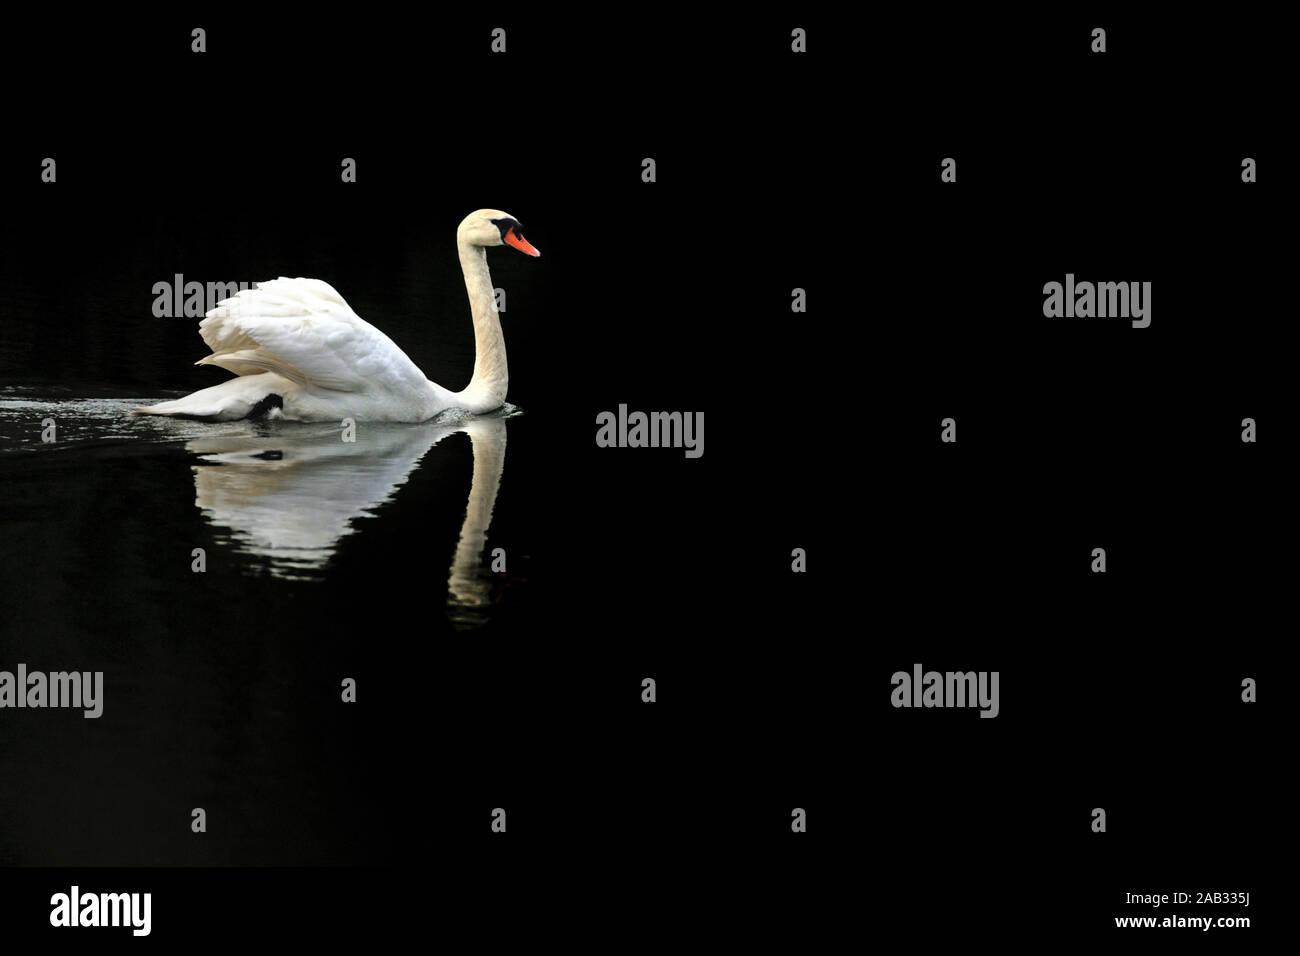 Schwimmender Hoeckerschwan, Spiegelung im Wasser, dunkler Hintergrund, Cygnus olor Stock Photo